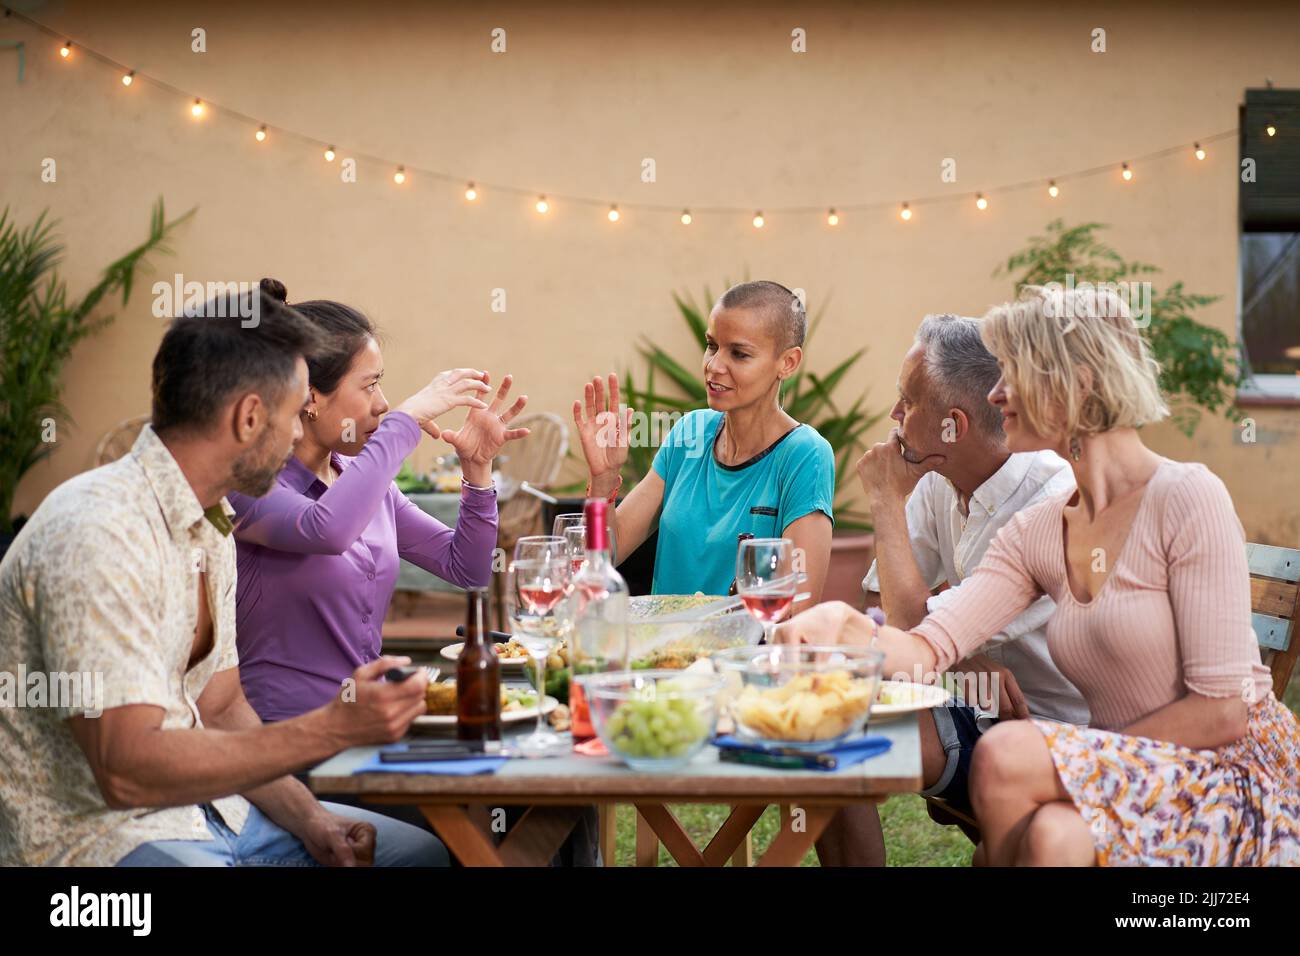 Gruppo di amici che chiacchierano durante il pranzo nel cortile. Persone di mezza età che hanno una discussione all'aperto a tavola mentre mangiano e bevono Foto Stock